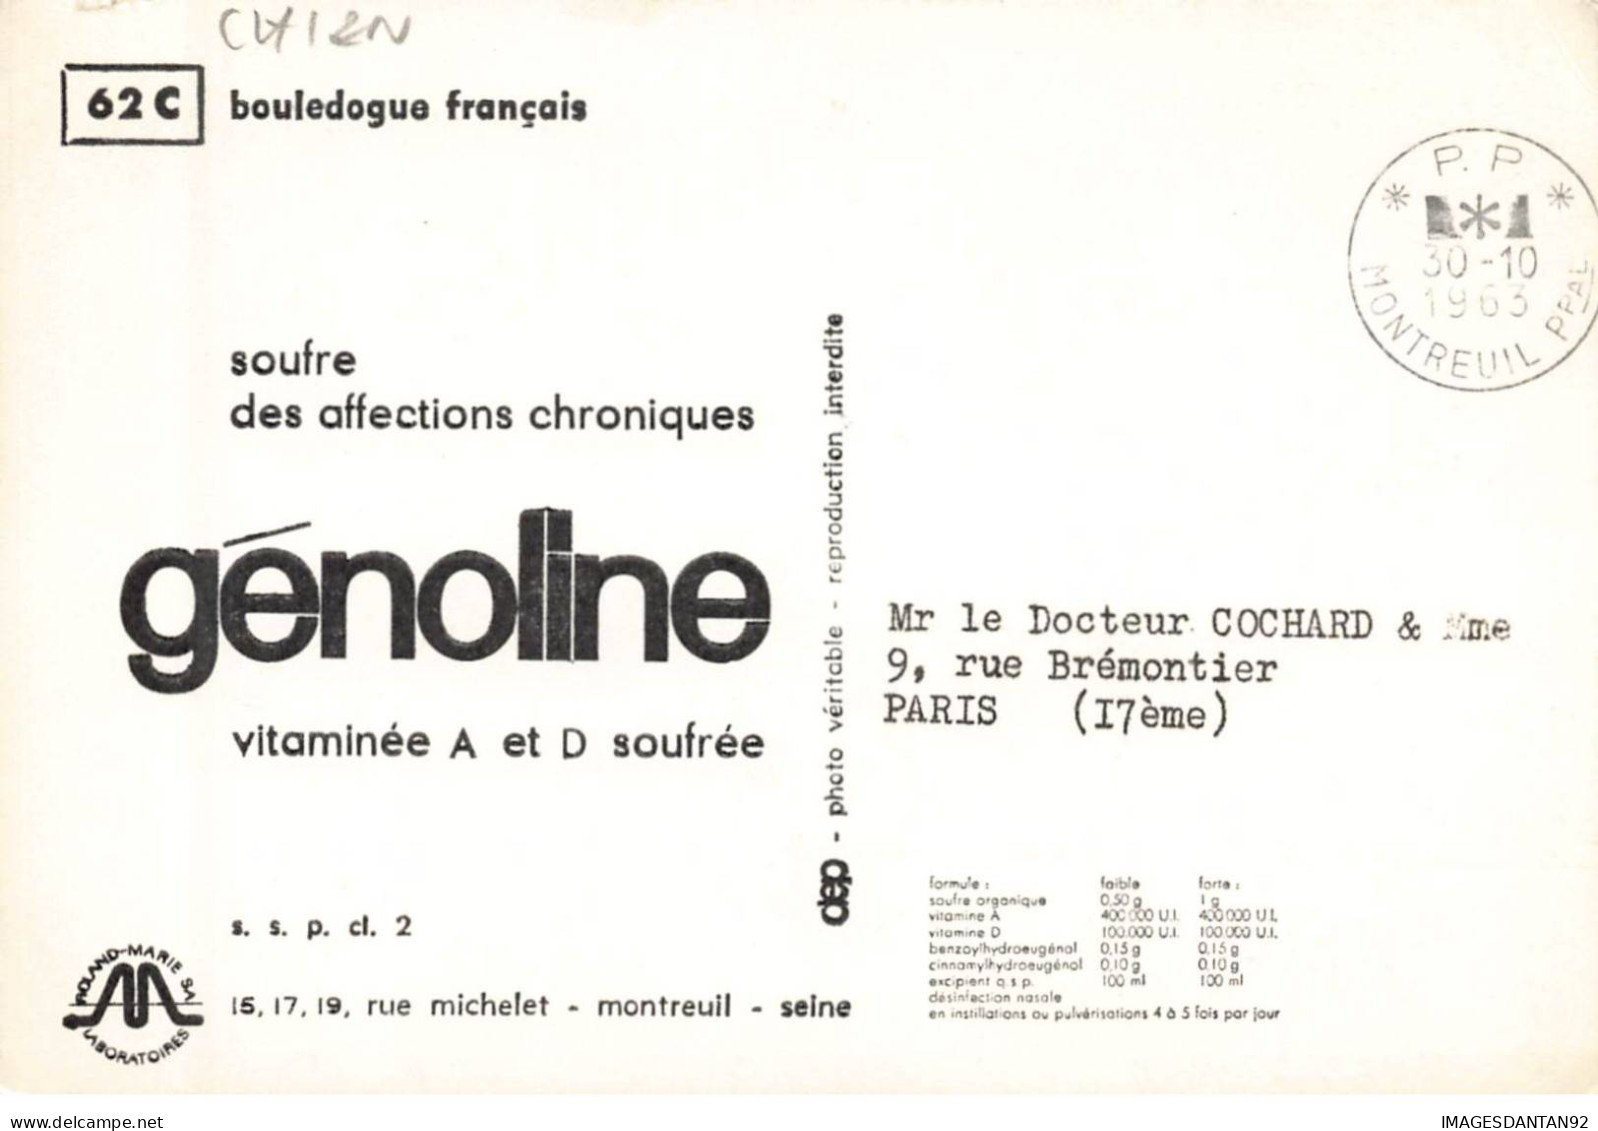 CHIENS AF#DC528 CHIEN BOULEDOGUE FRANCAIS + PUBLICITE AFFECTIONS CHRONIQUES GENOLINE - Chiens